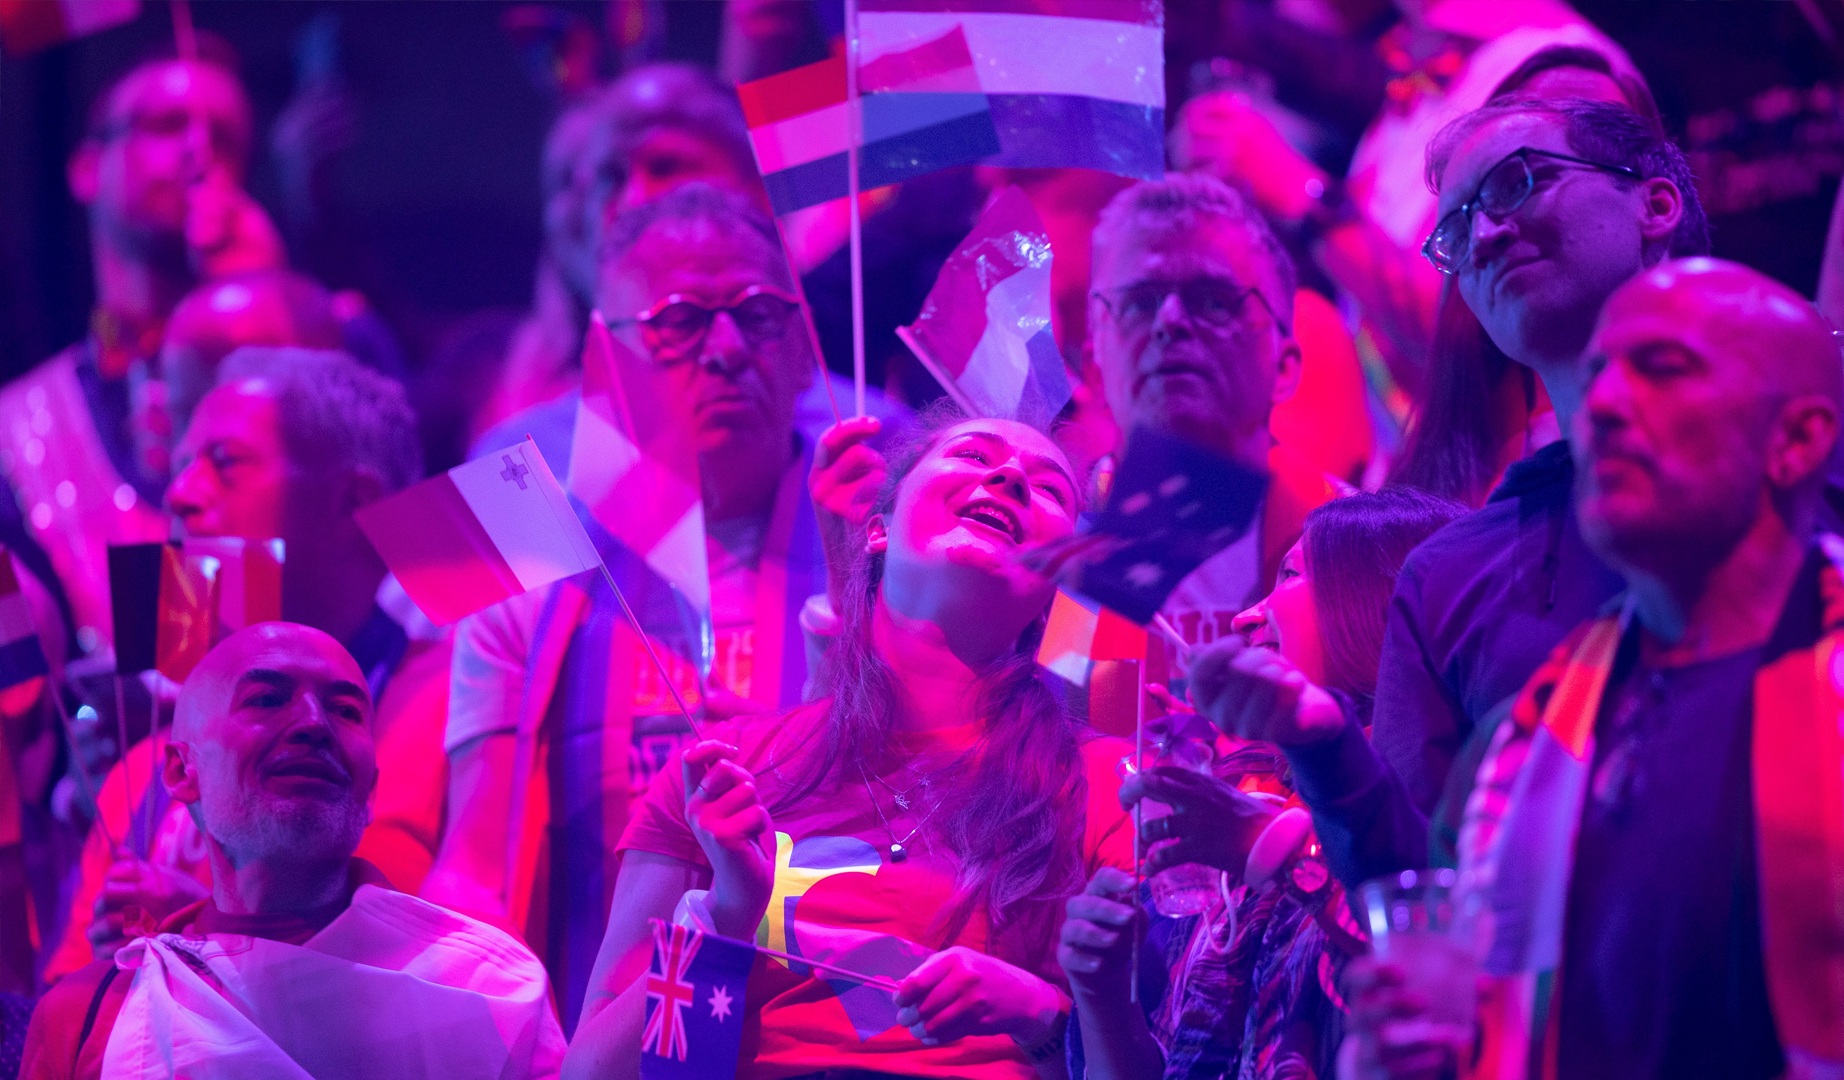 Audiencias: Conoce los datos de la final de Eurovisión 2021 en Europa